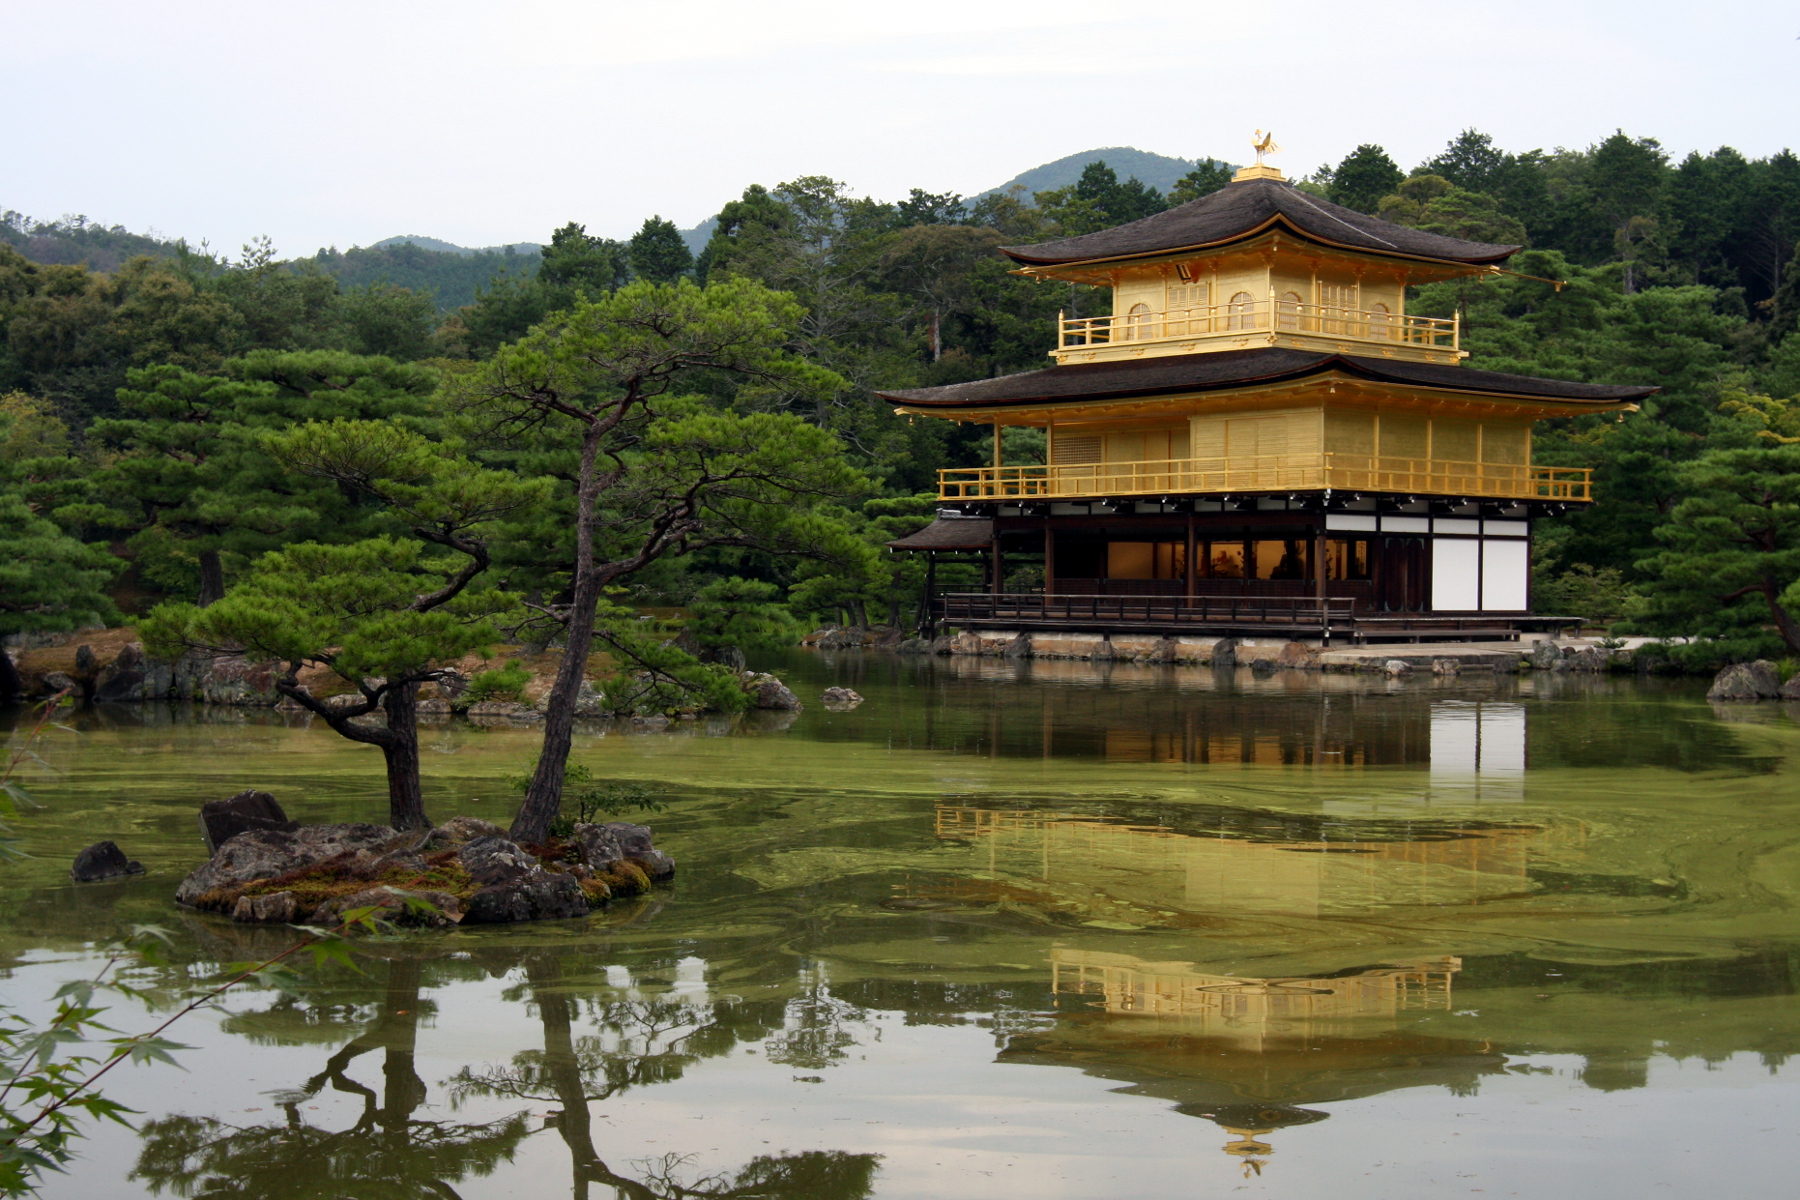 Najpiękniejsze ogrody japońskie w Japonii: ogród przy Złotej Świątyni, Kinkaku-ji / Kinkakuji / Kinkakuji Garden (金閣寺), Kioto, prefektura Kioto